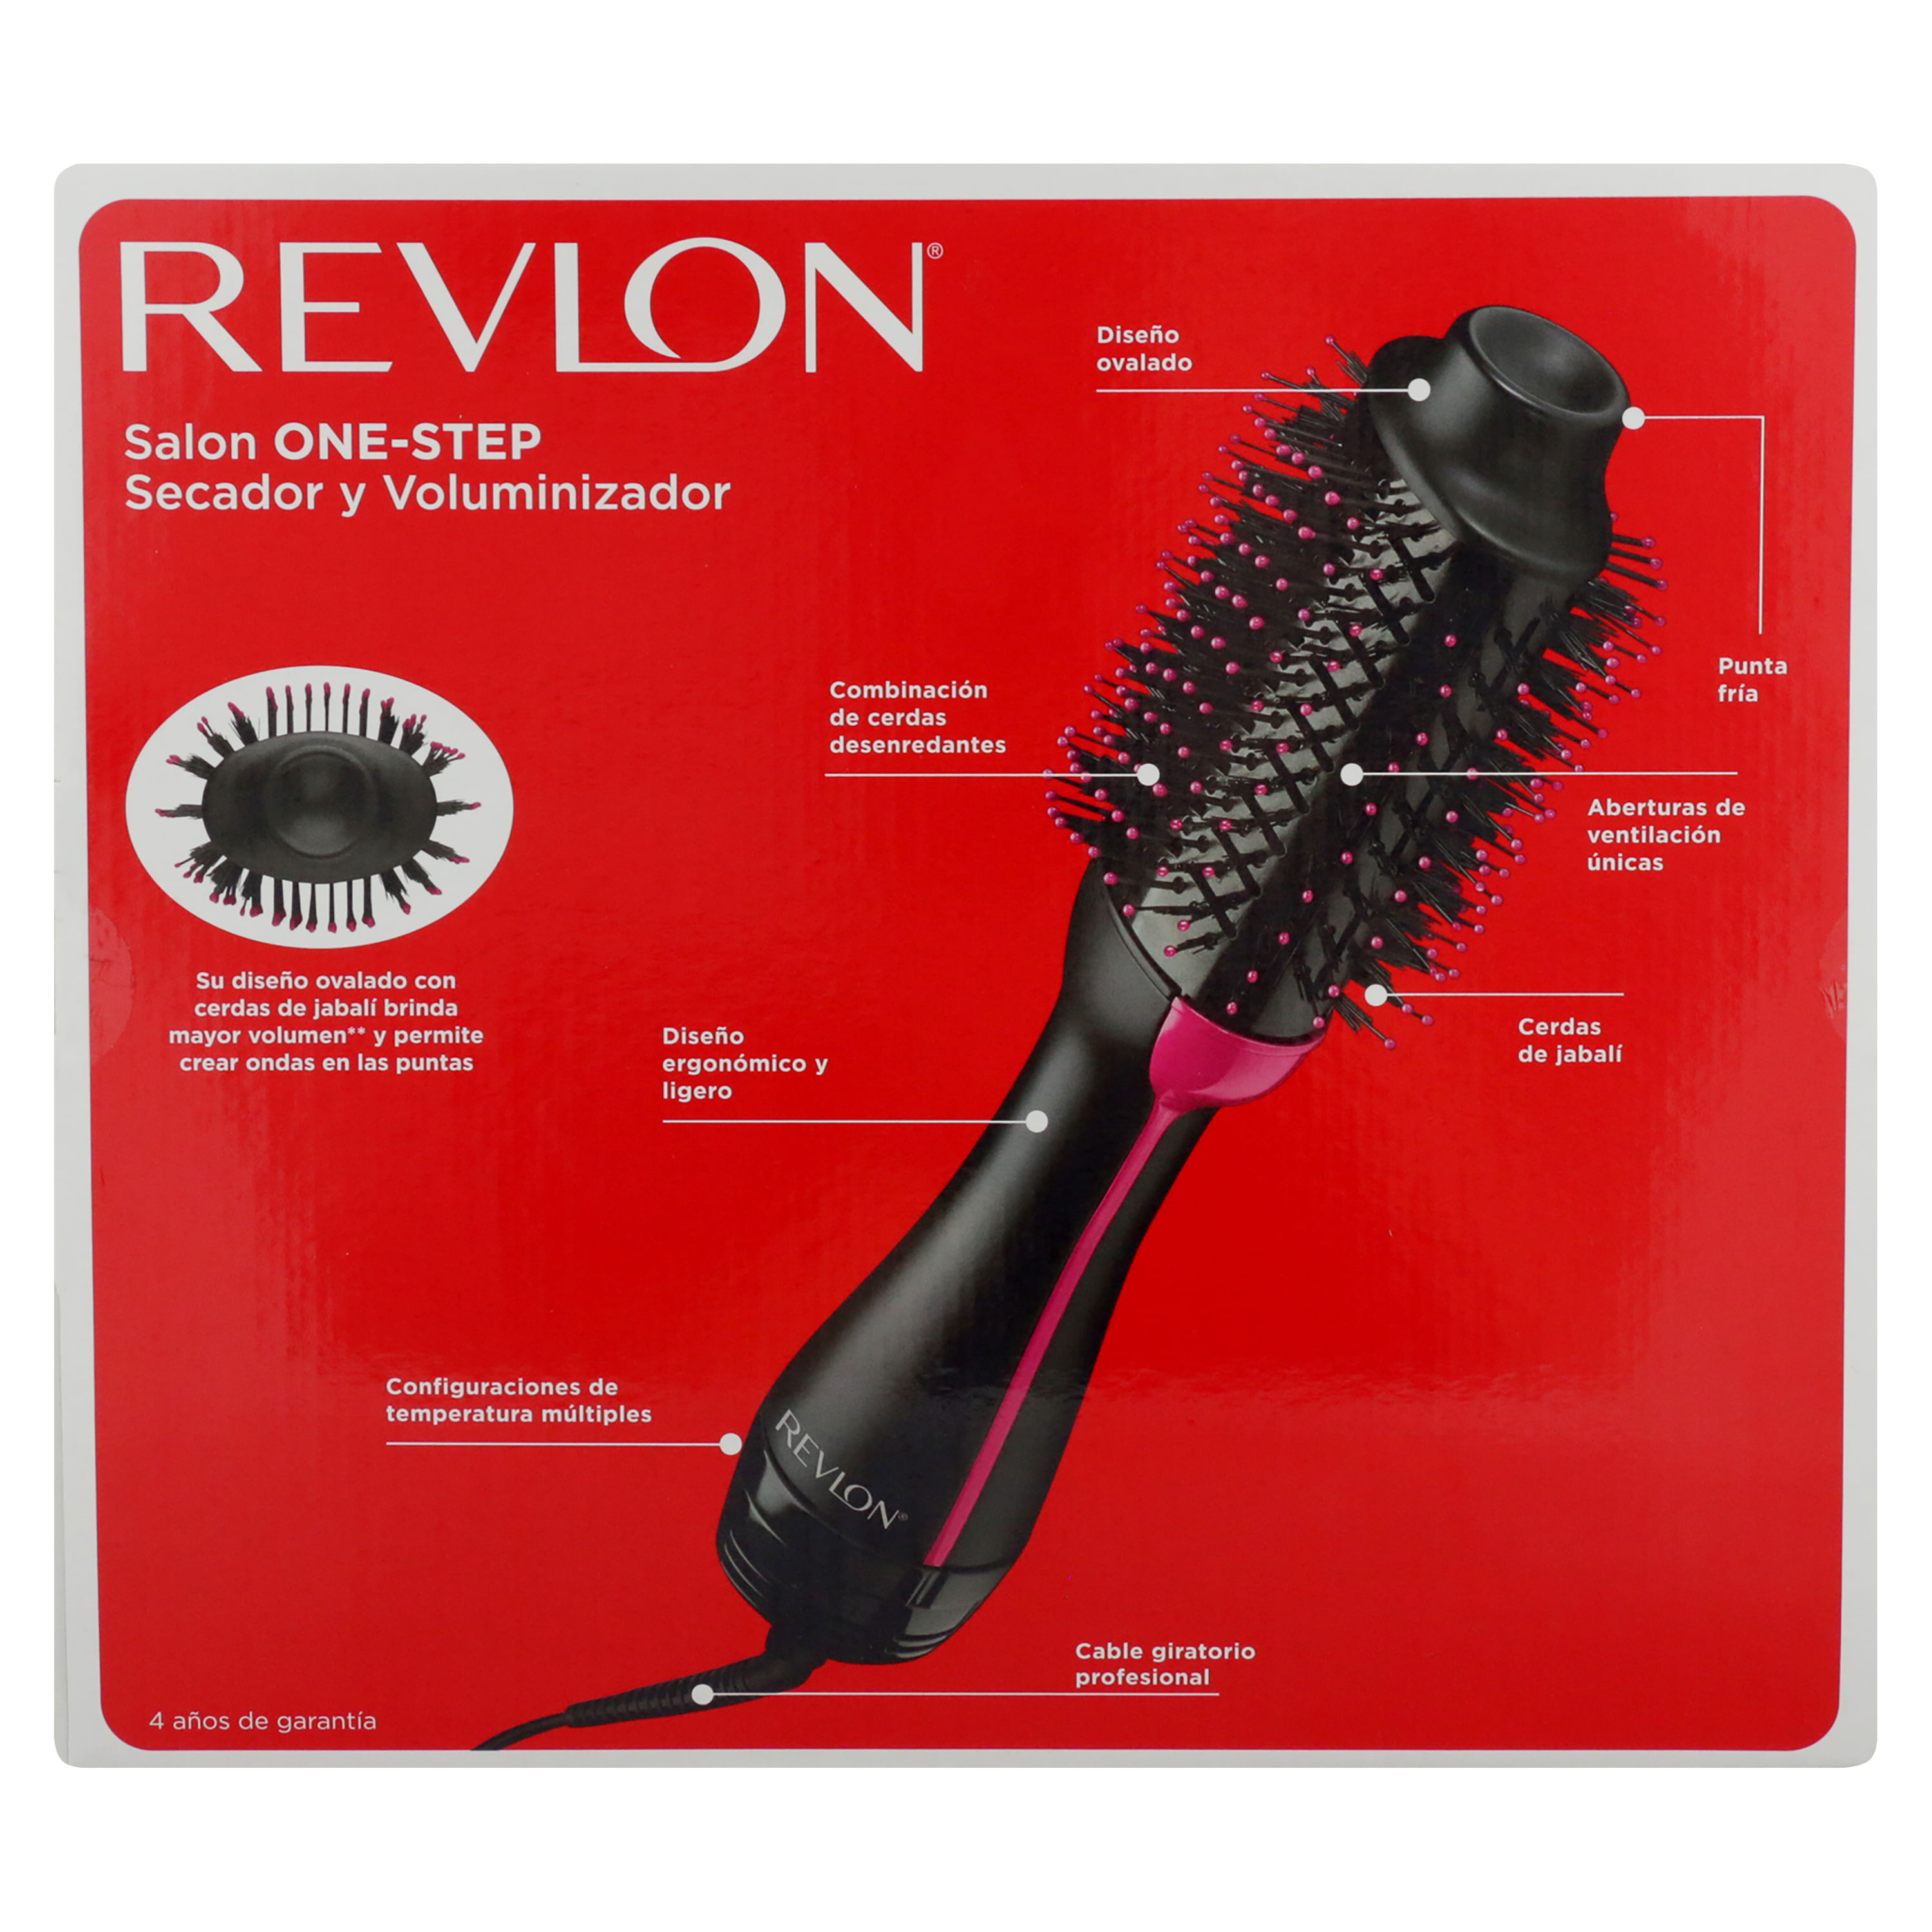 Revlon cepillo secador al mejor precio - AliExpress